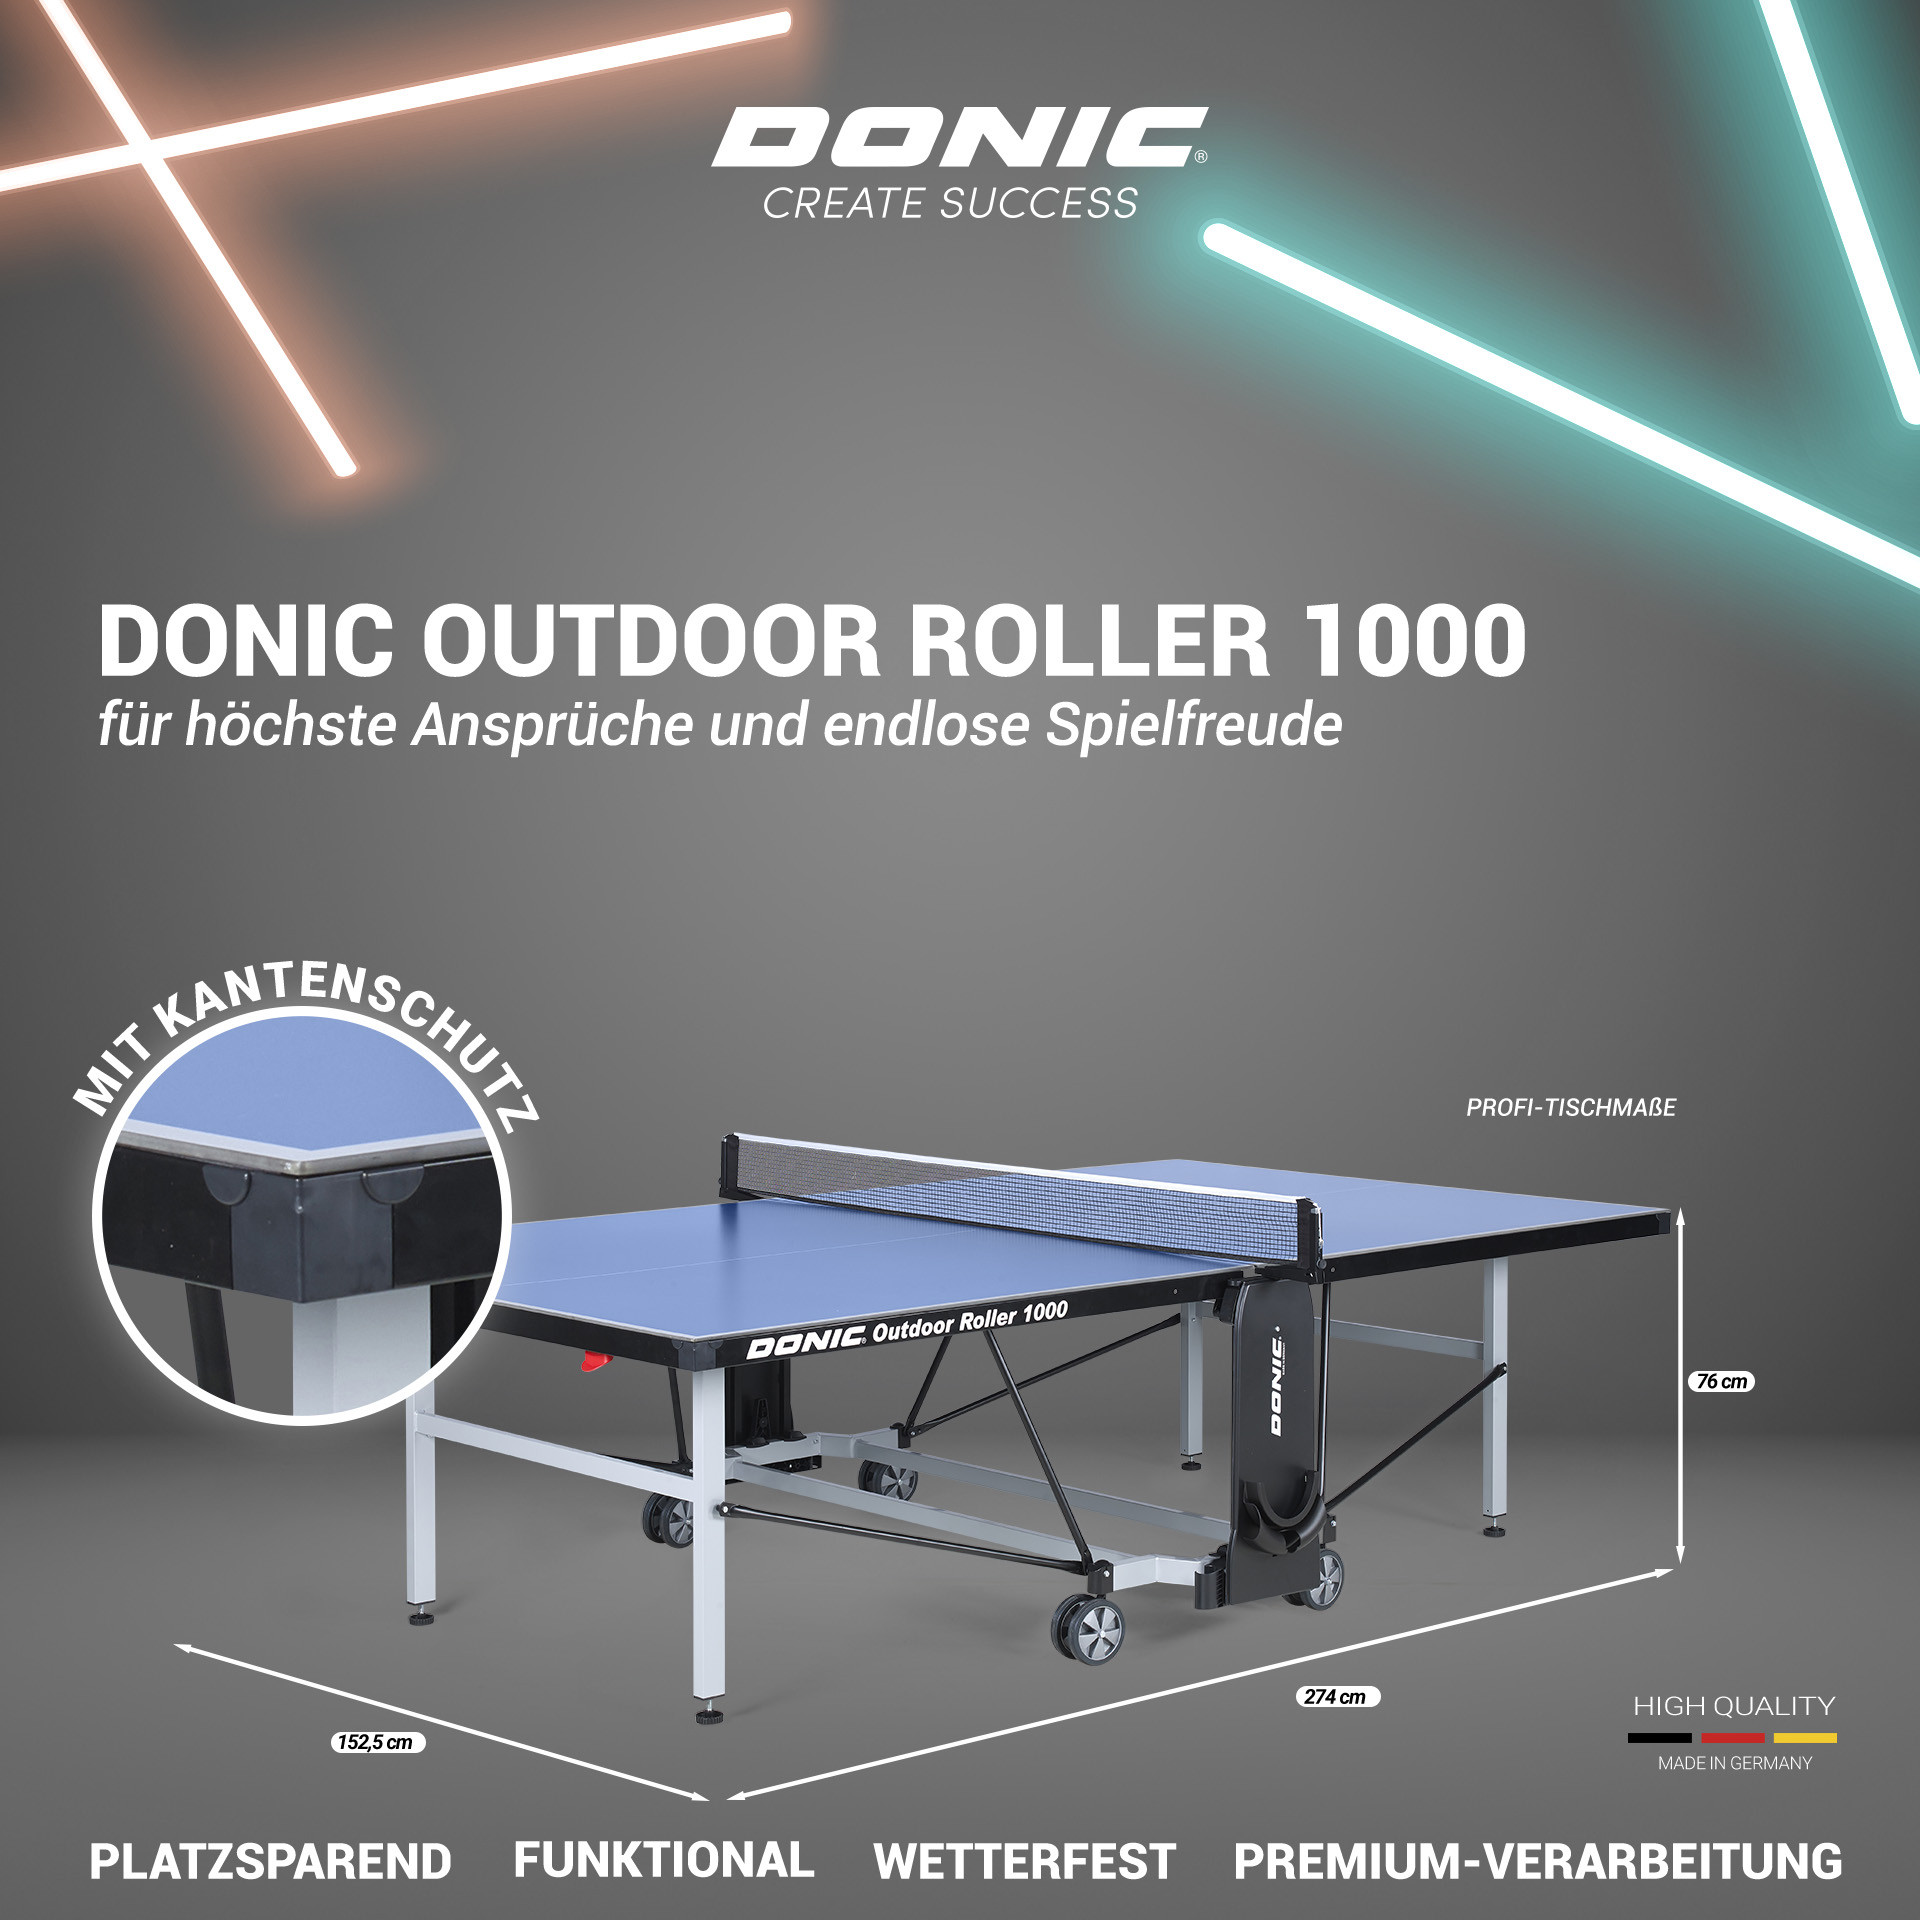 ᐅ Donic Outdoor Roller 1000 | Die solide Outdoor Platte